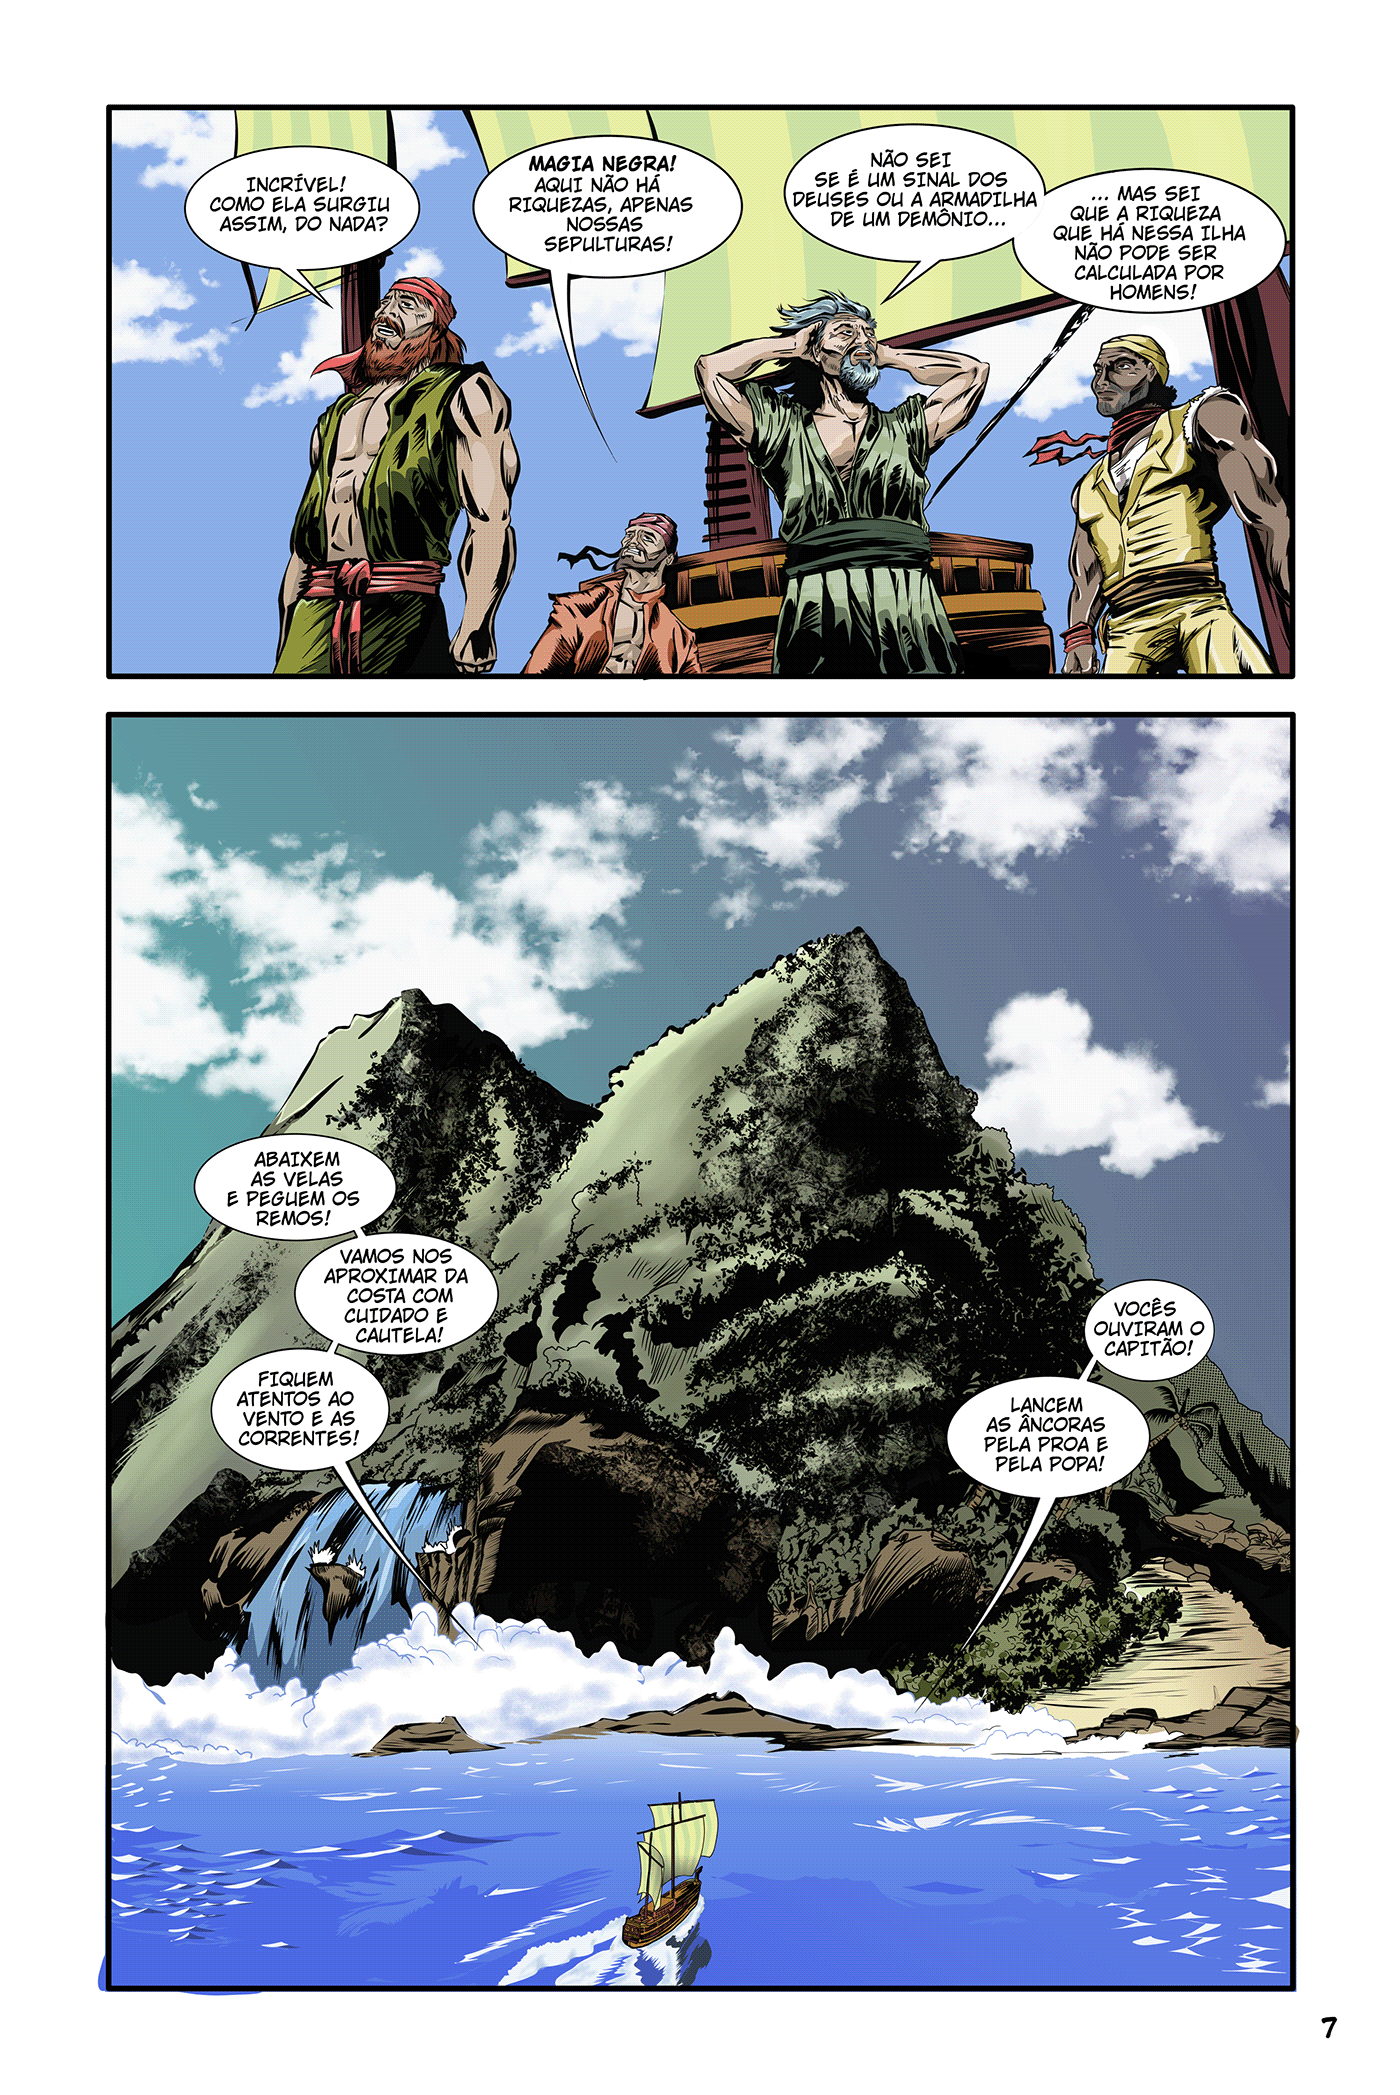 História em quadrinhos autoral sobre aventura épica em uma terra fantástica